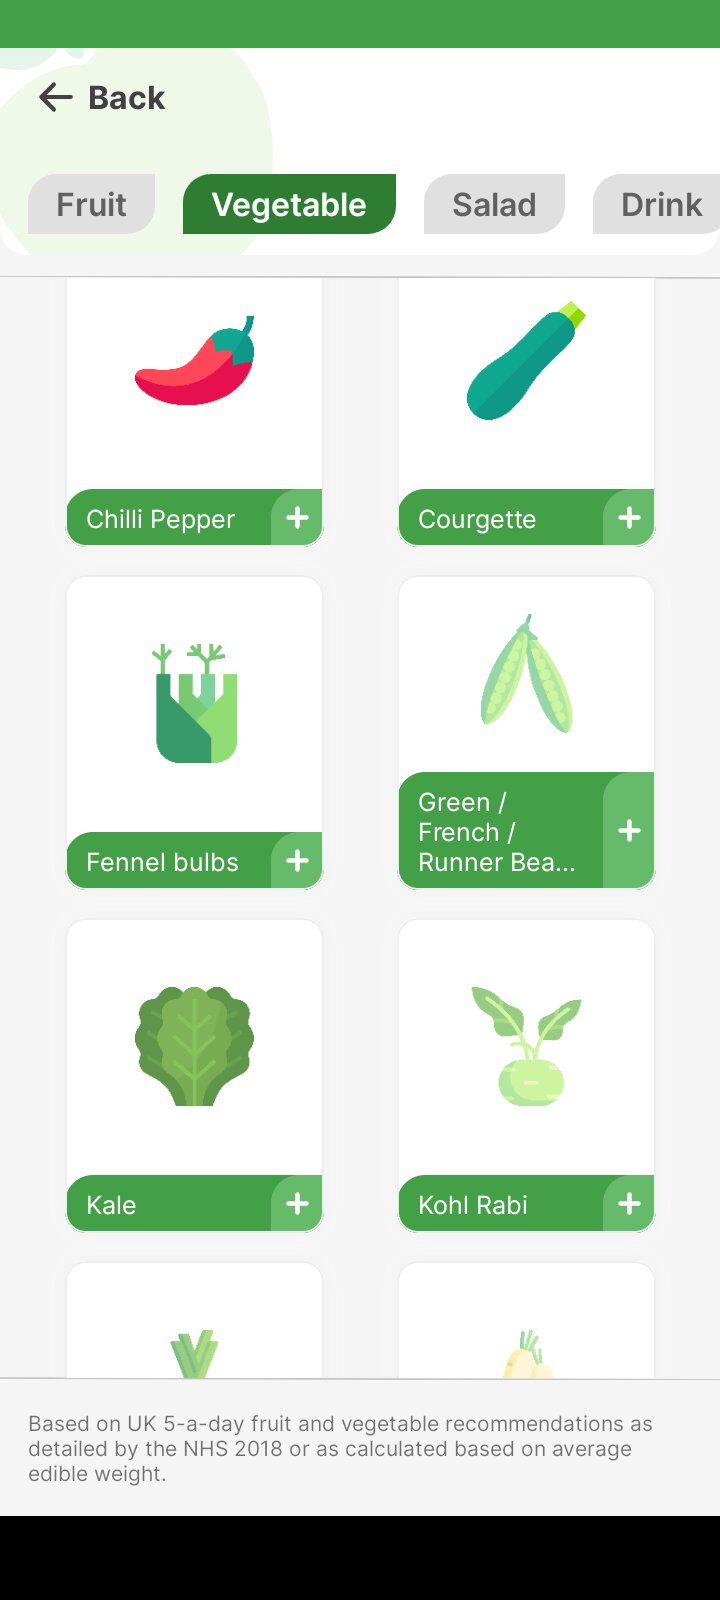 Nowa aplikacja, która pomoże ludziom jeść pięć porcji owoców i warzyw dziennie